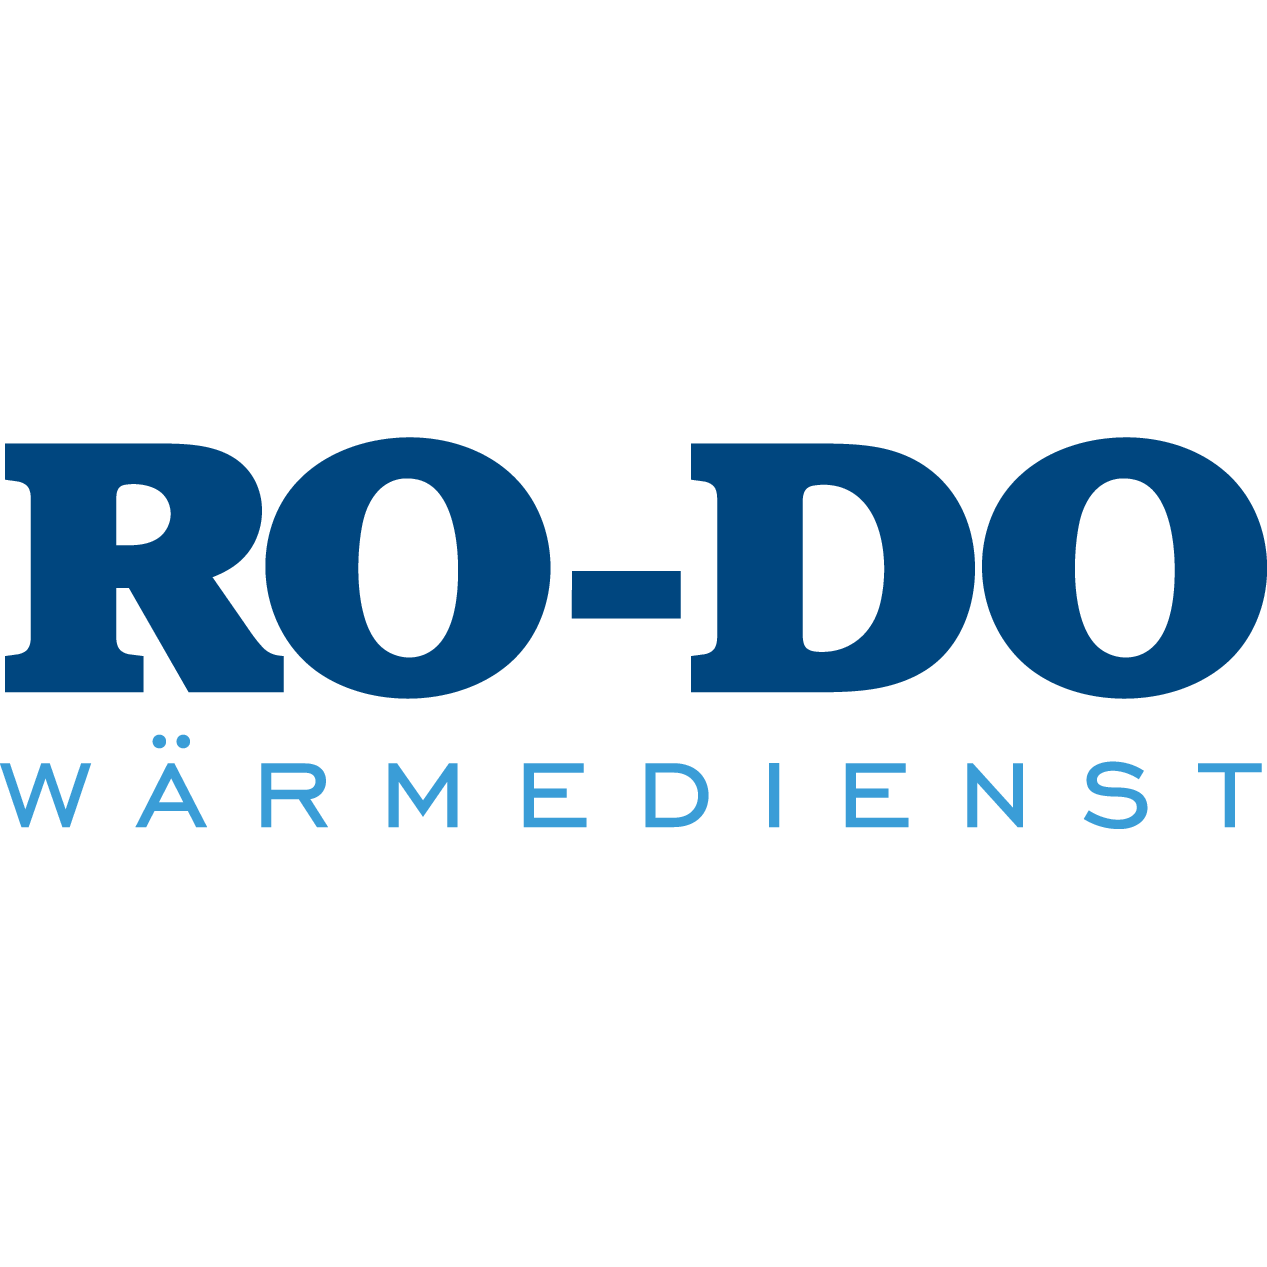 RO-DO Wärmedienst GmbH in Berlin - Logo